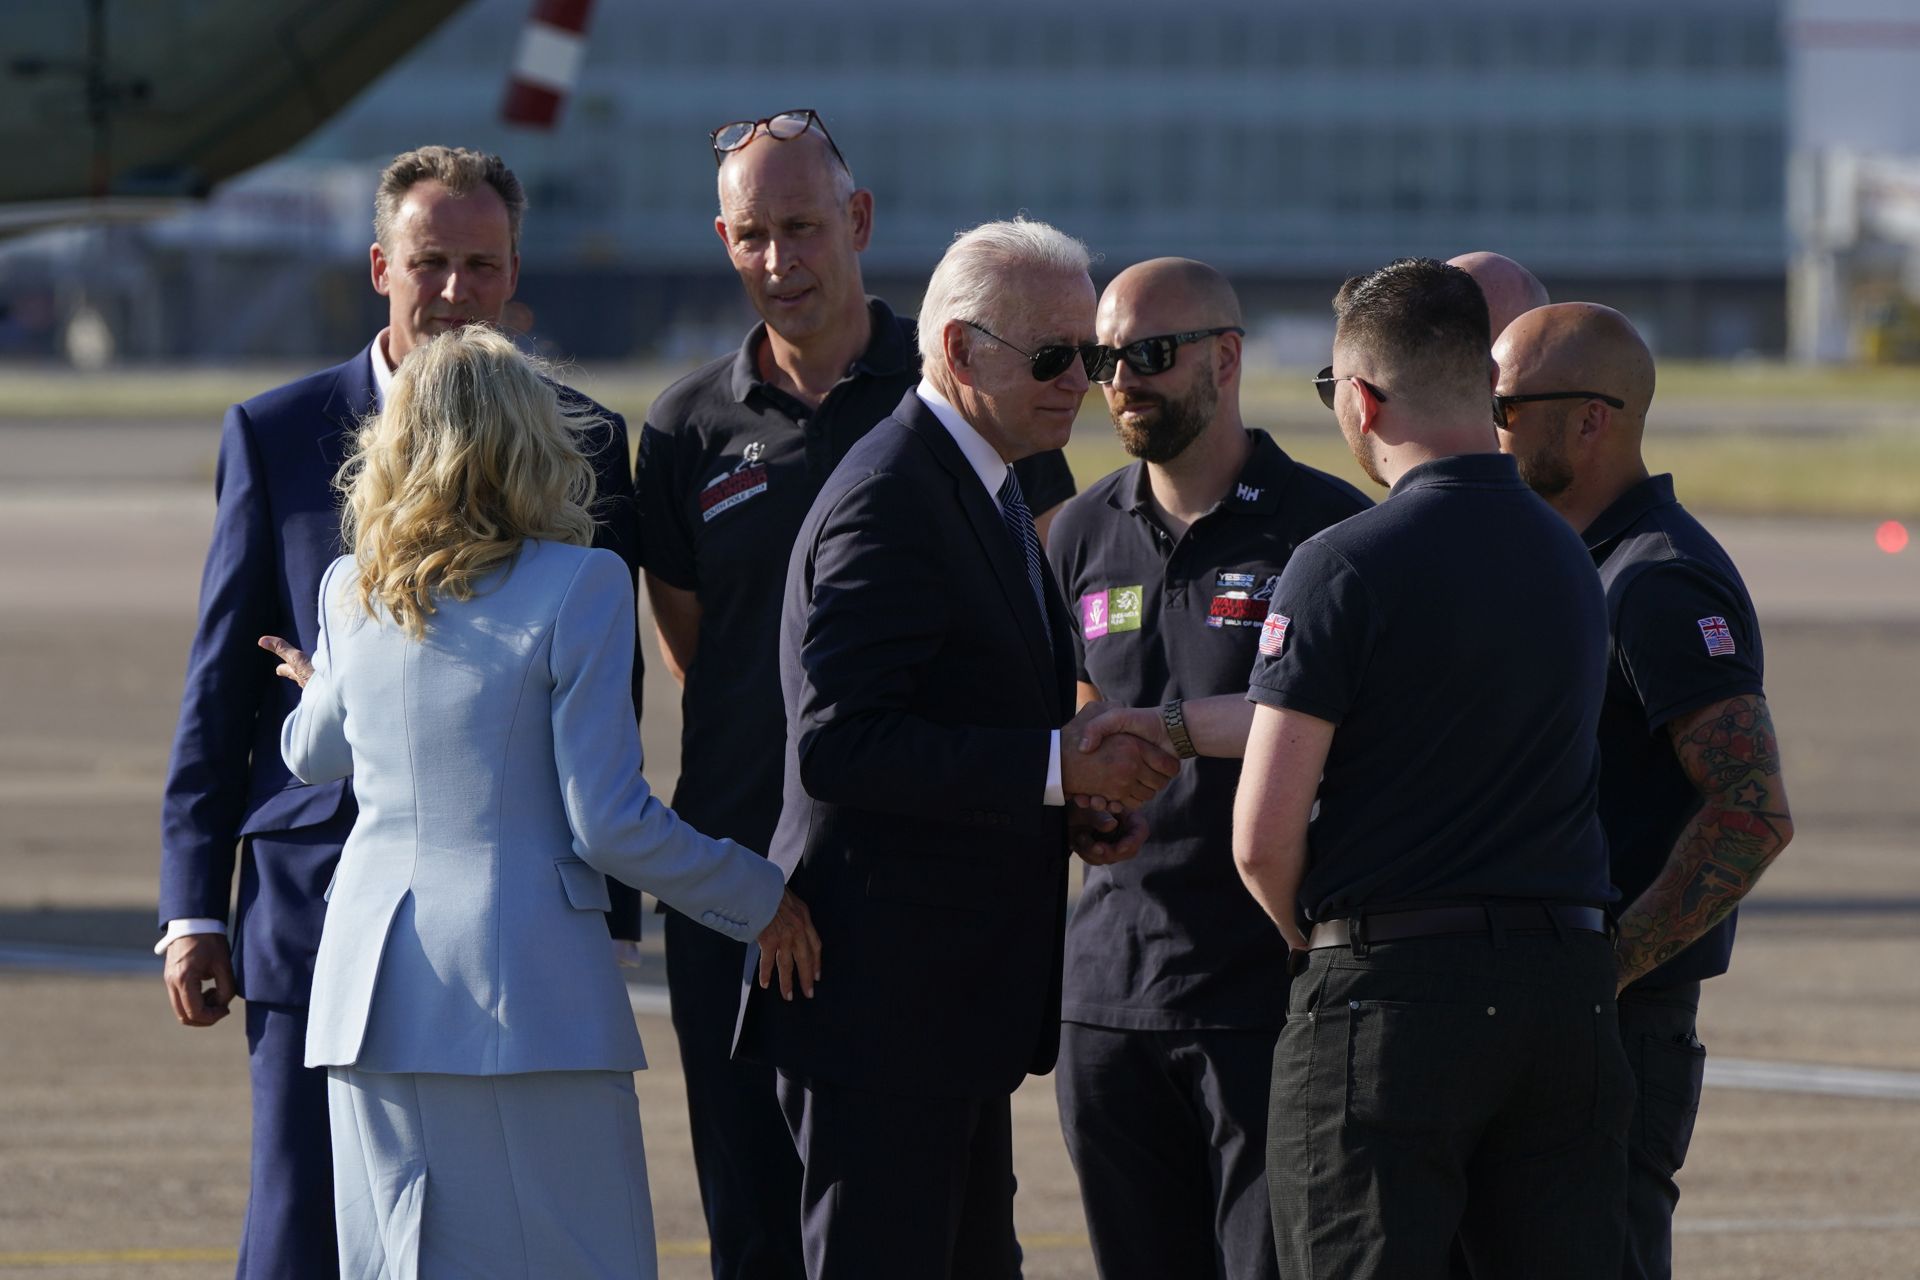 Президентът Джо Байдън и първата дама Джил Байдън се срещат с ветерани от британските въоръжени сили, преди да се качат на Air Force One на летище Хийтроу в Лондон